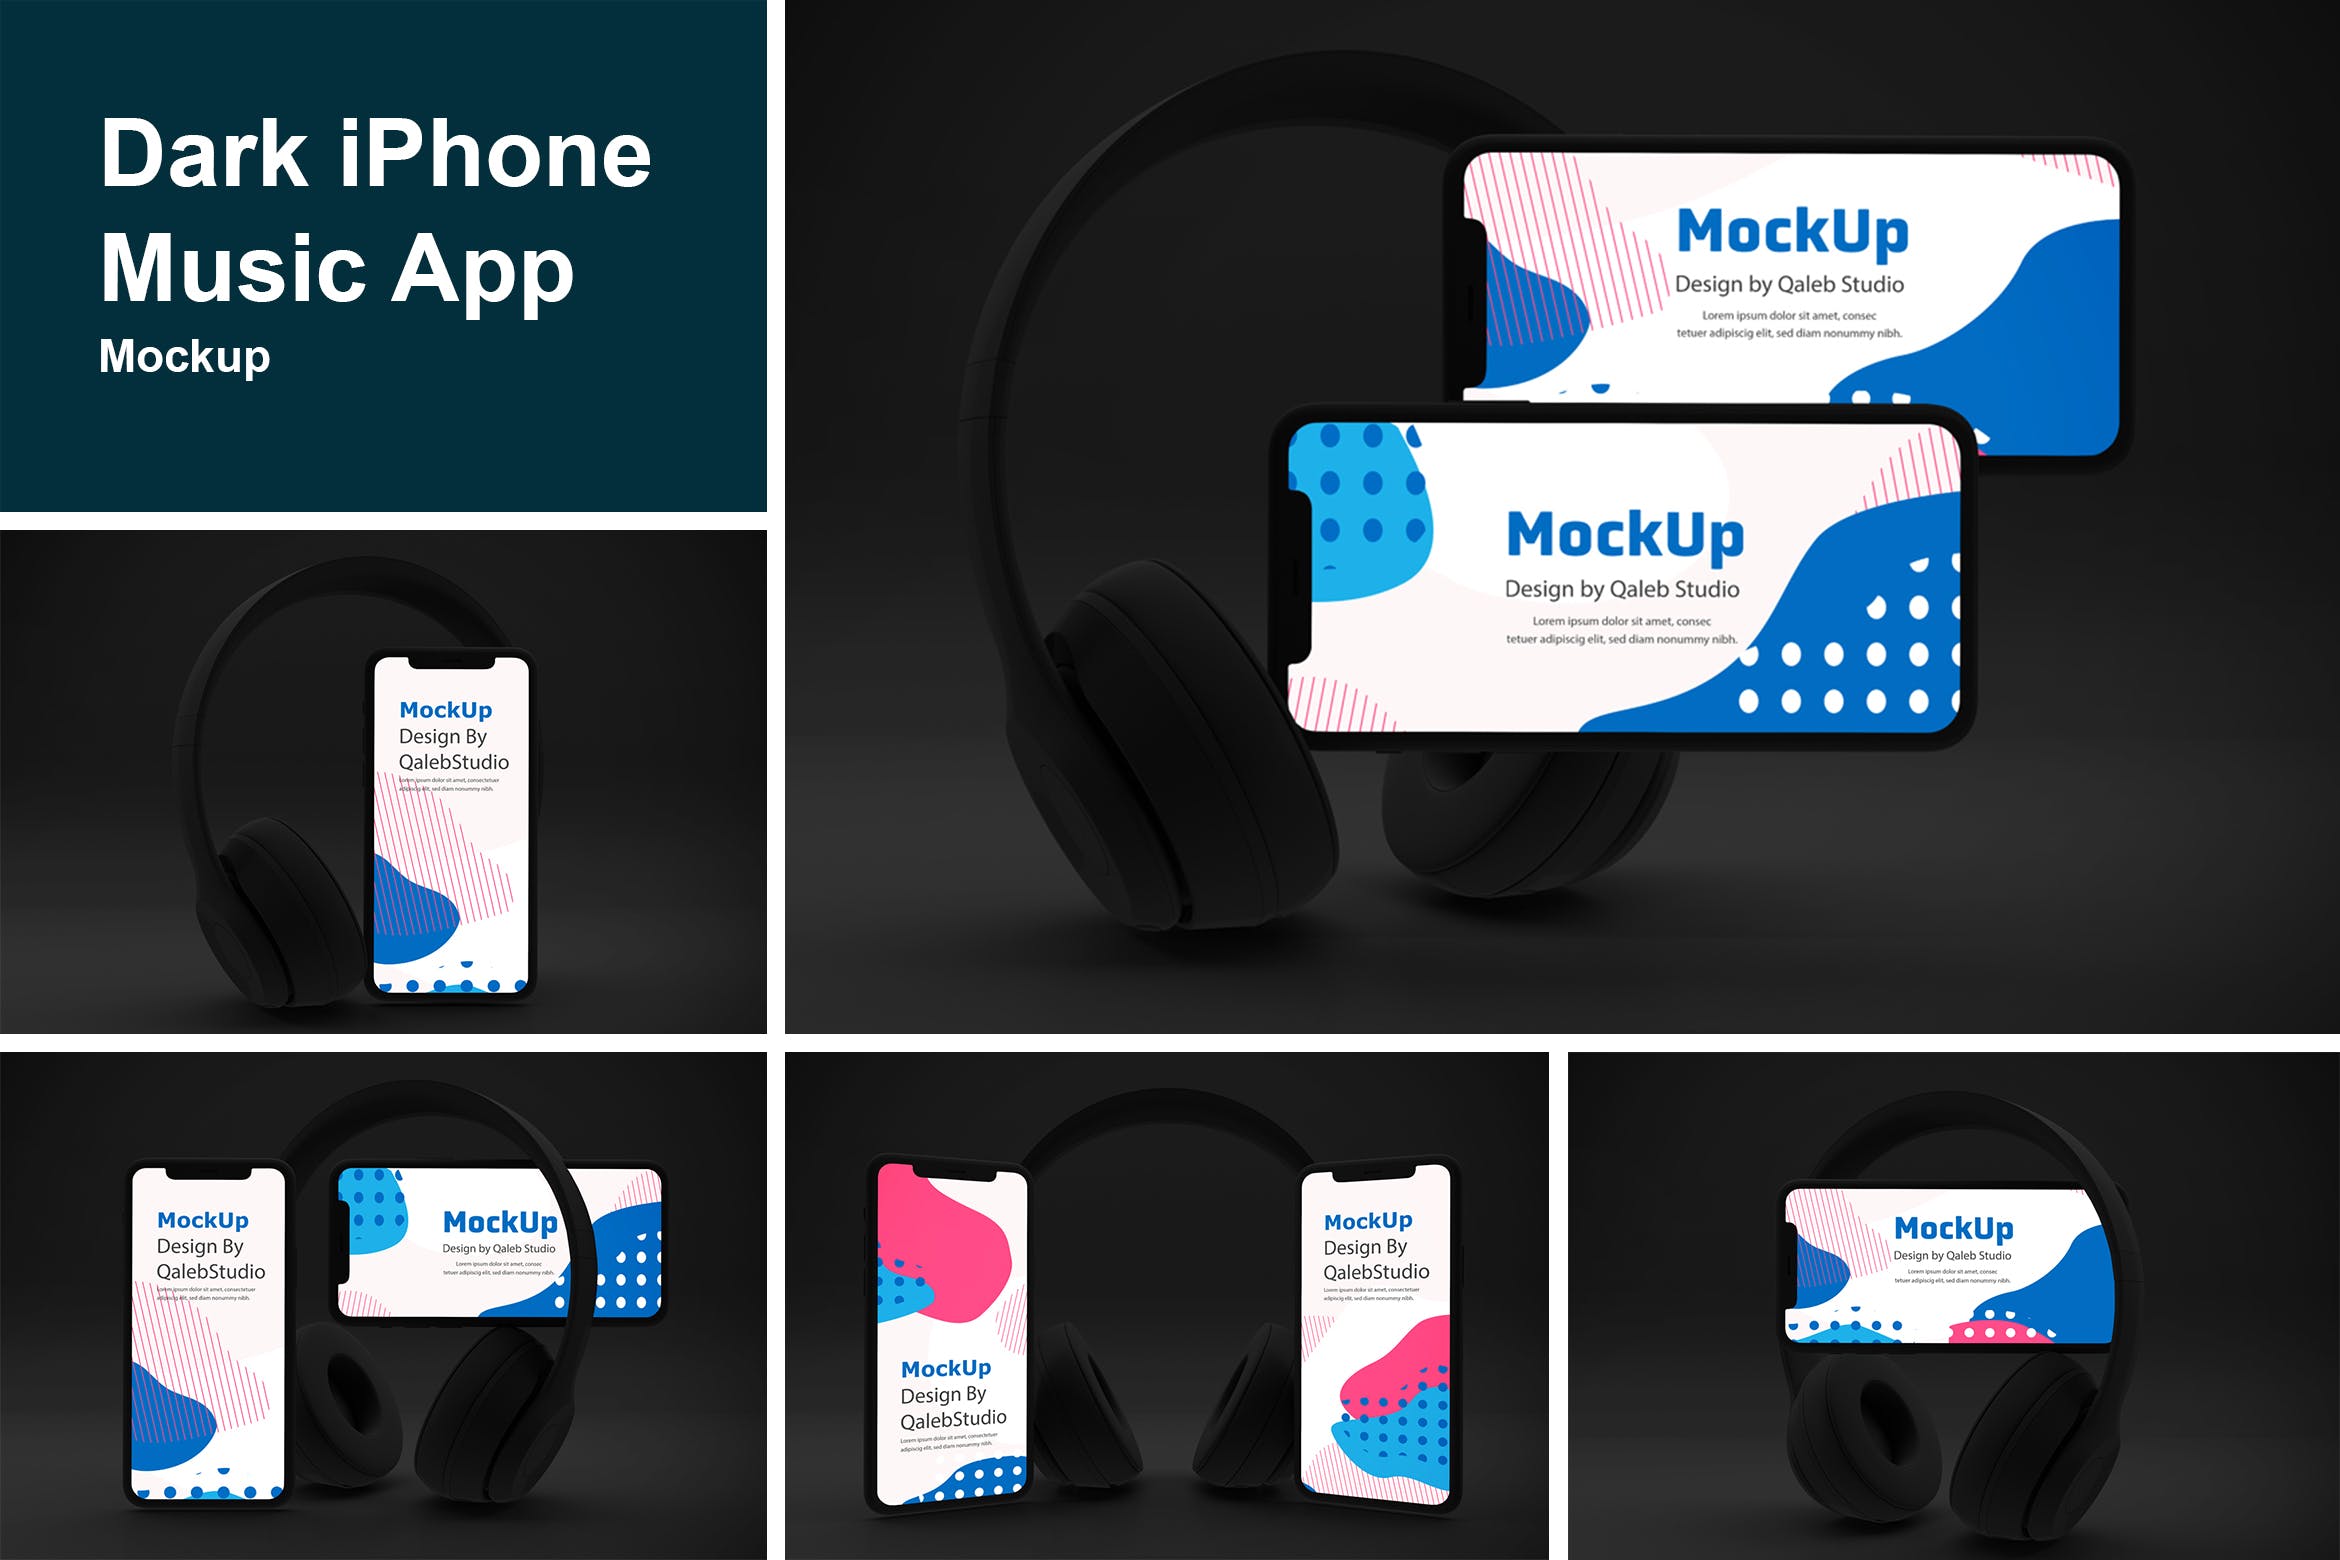 深色背景iPhone音乐APP应用UI设计效果图素材库精选样机 Dark iPhone Music App Mockup插图